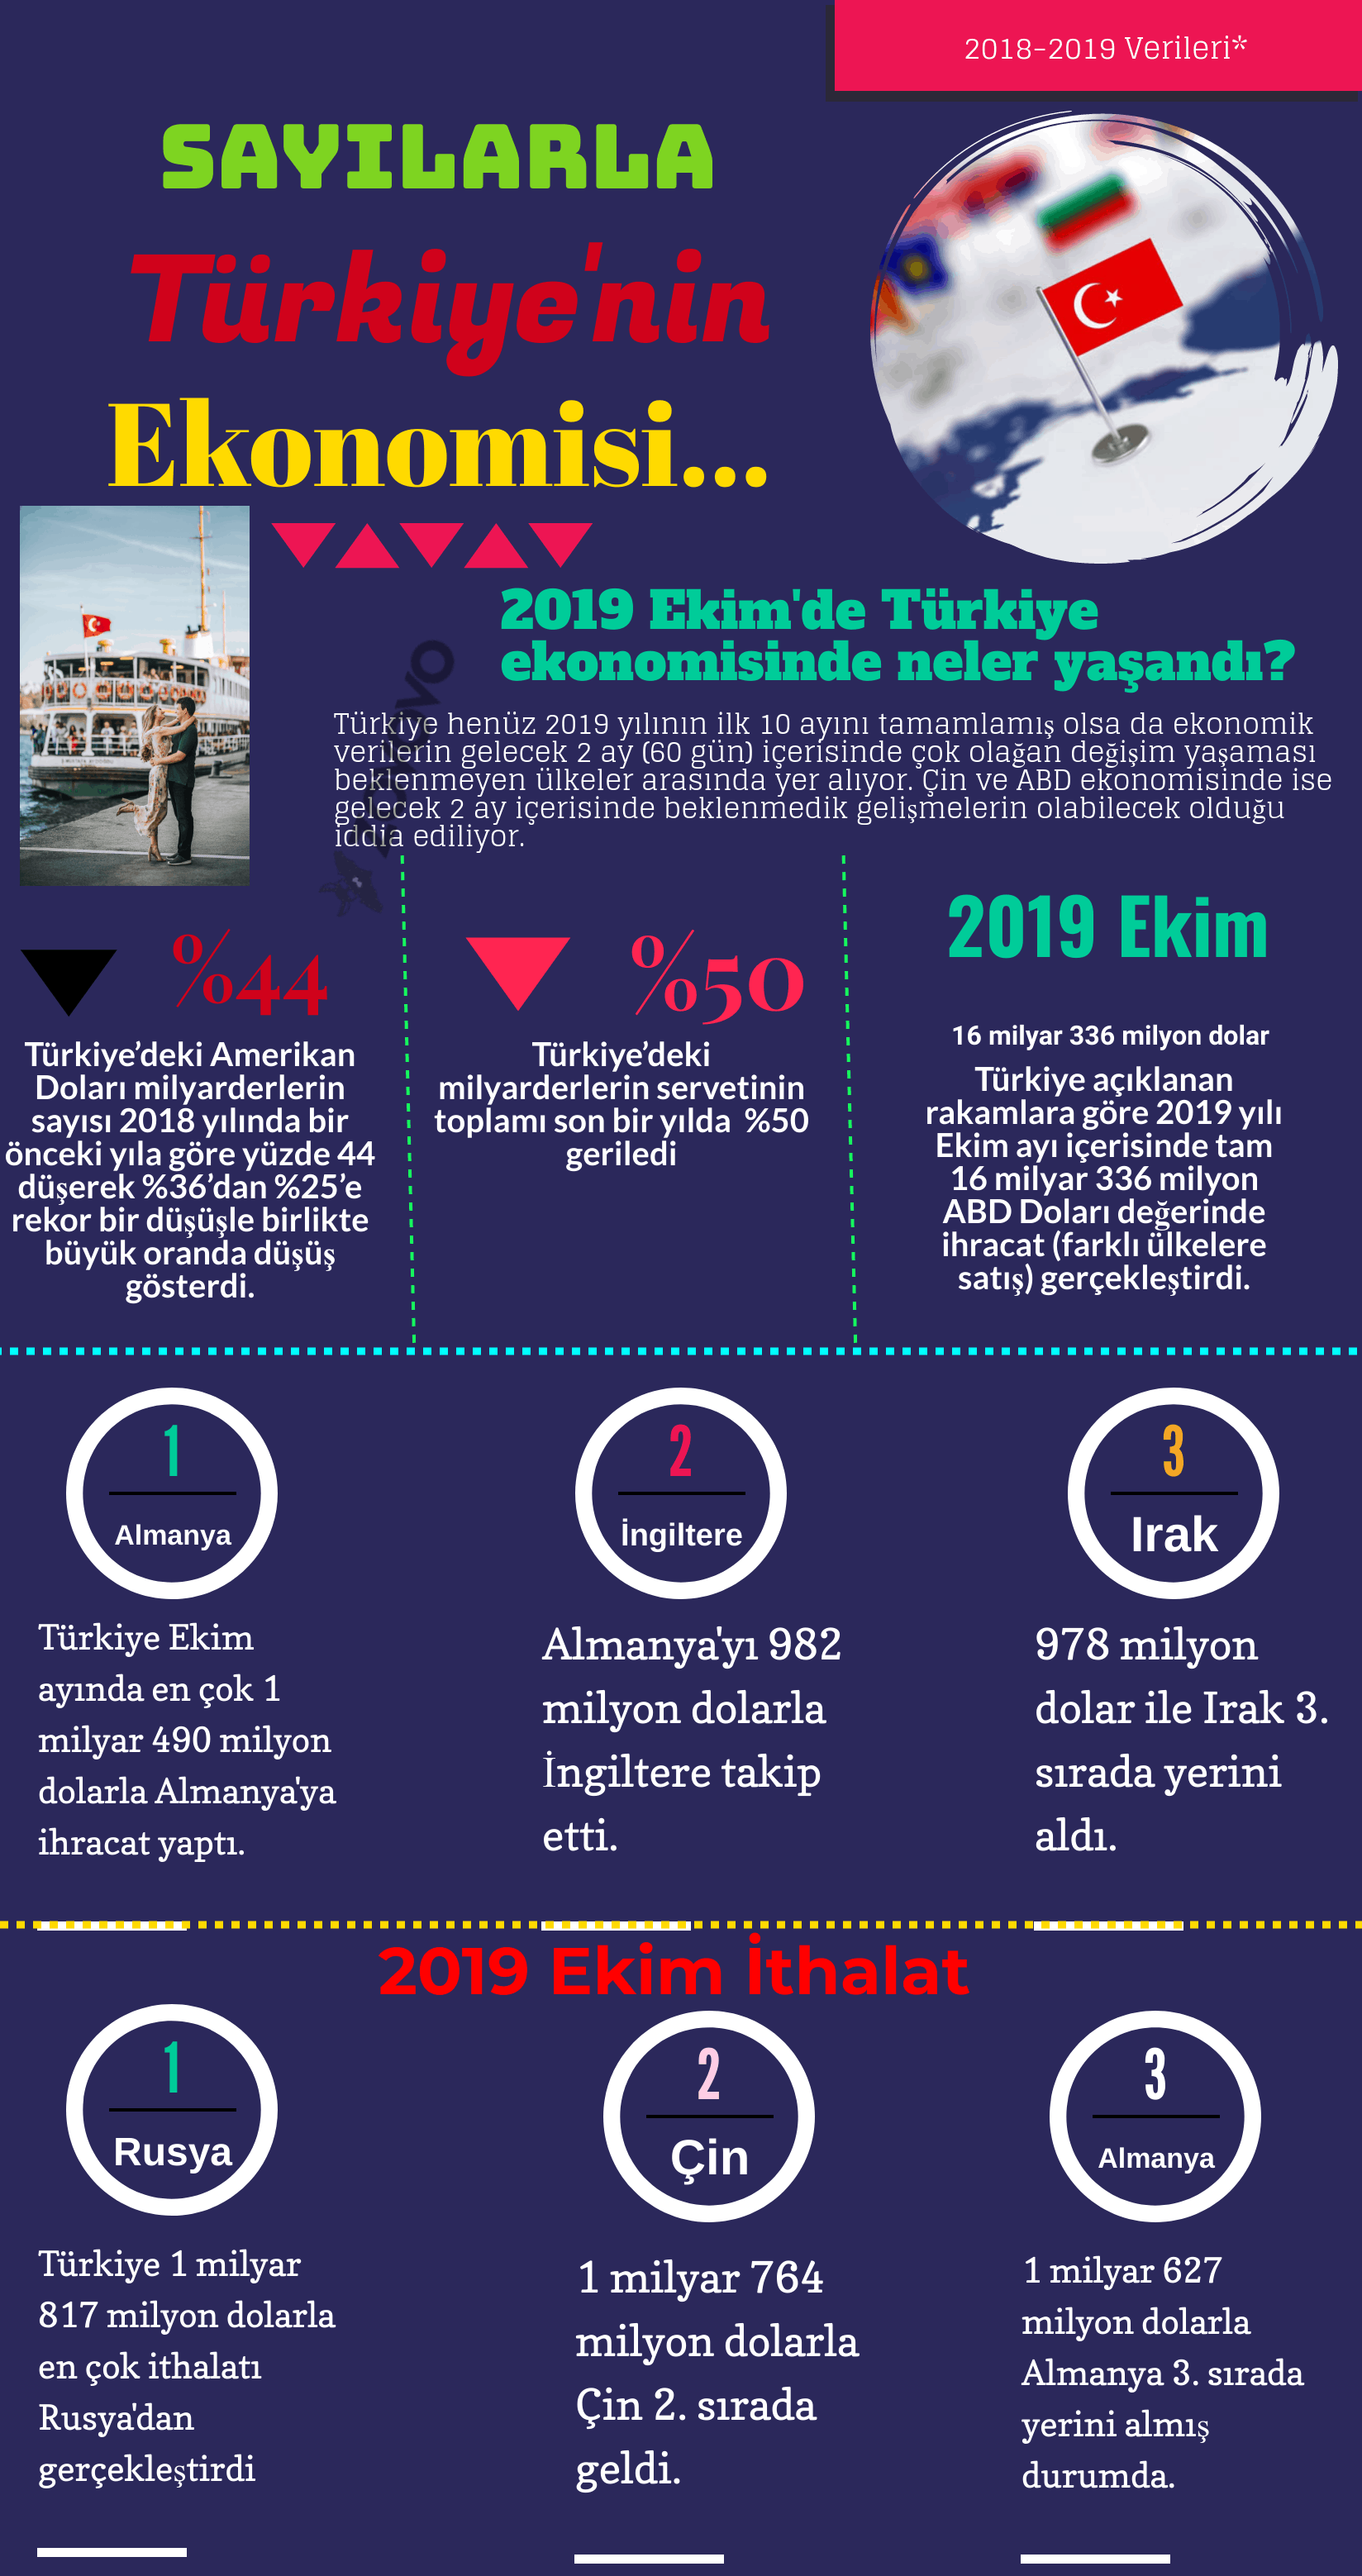 Sayılarla 2019 Türkiye Ekonomisi – En Çok İhracat/İthalat Nereden Yapıldı? – İnfografik